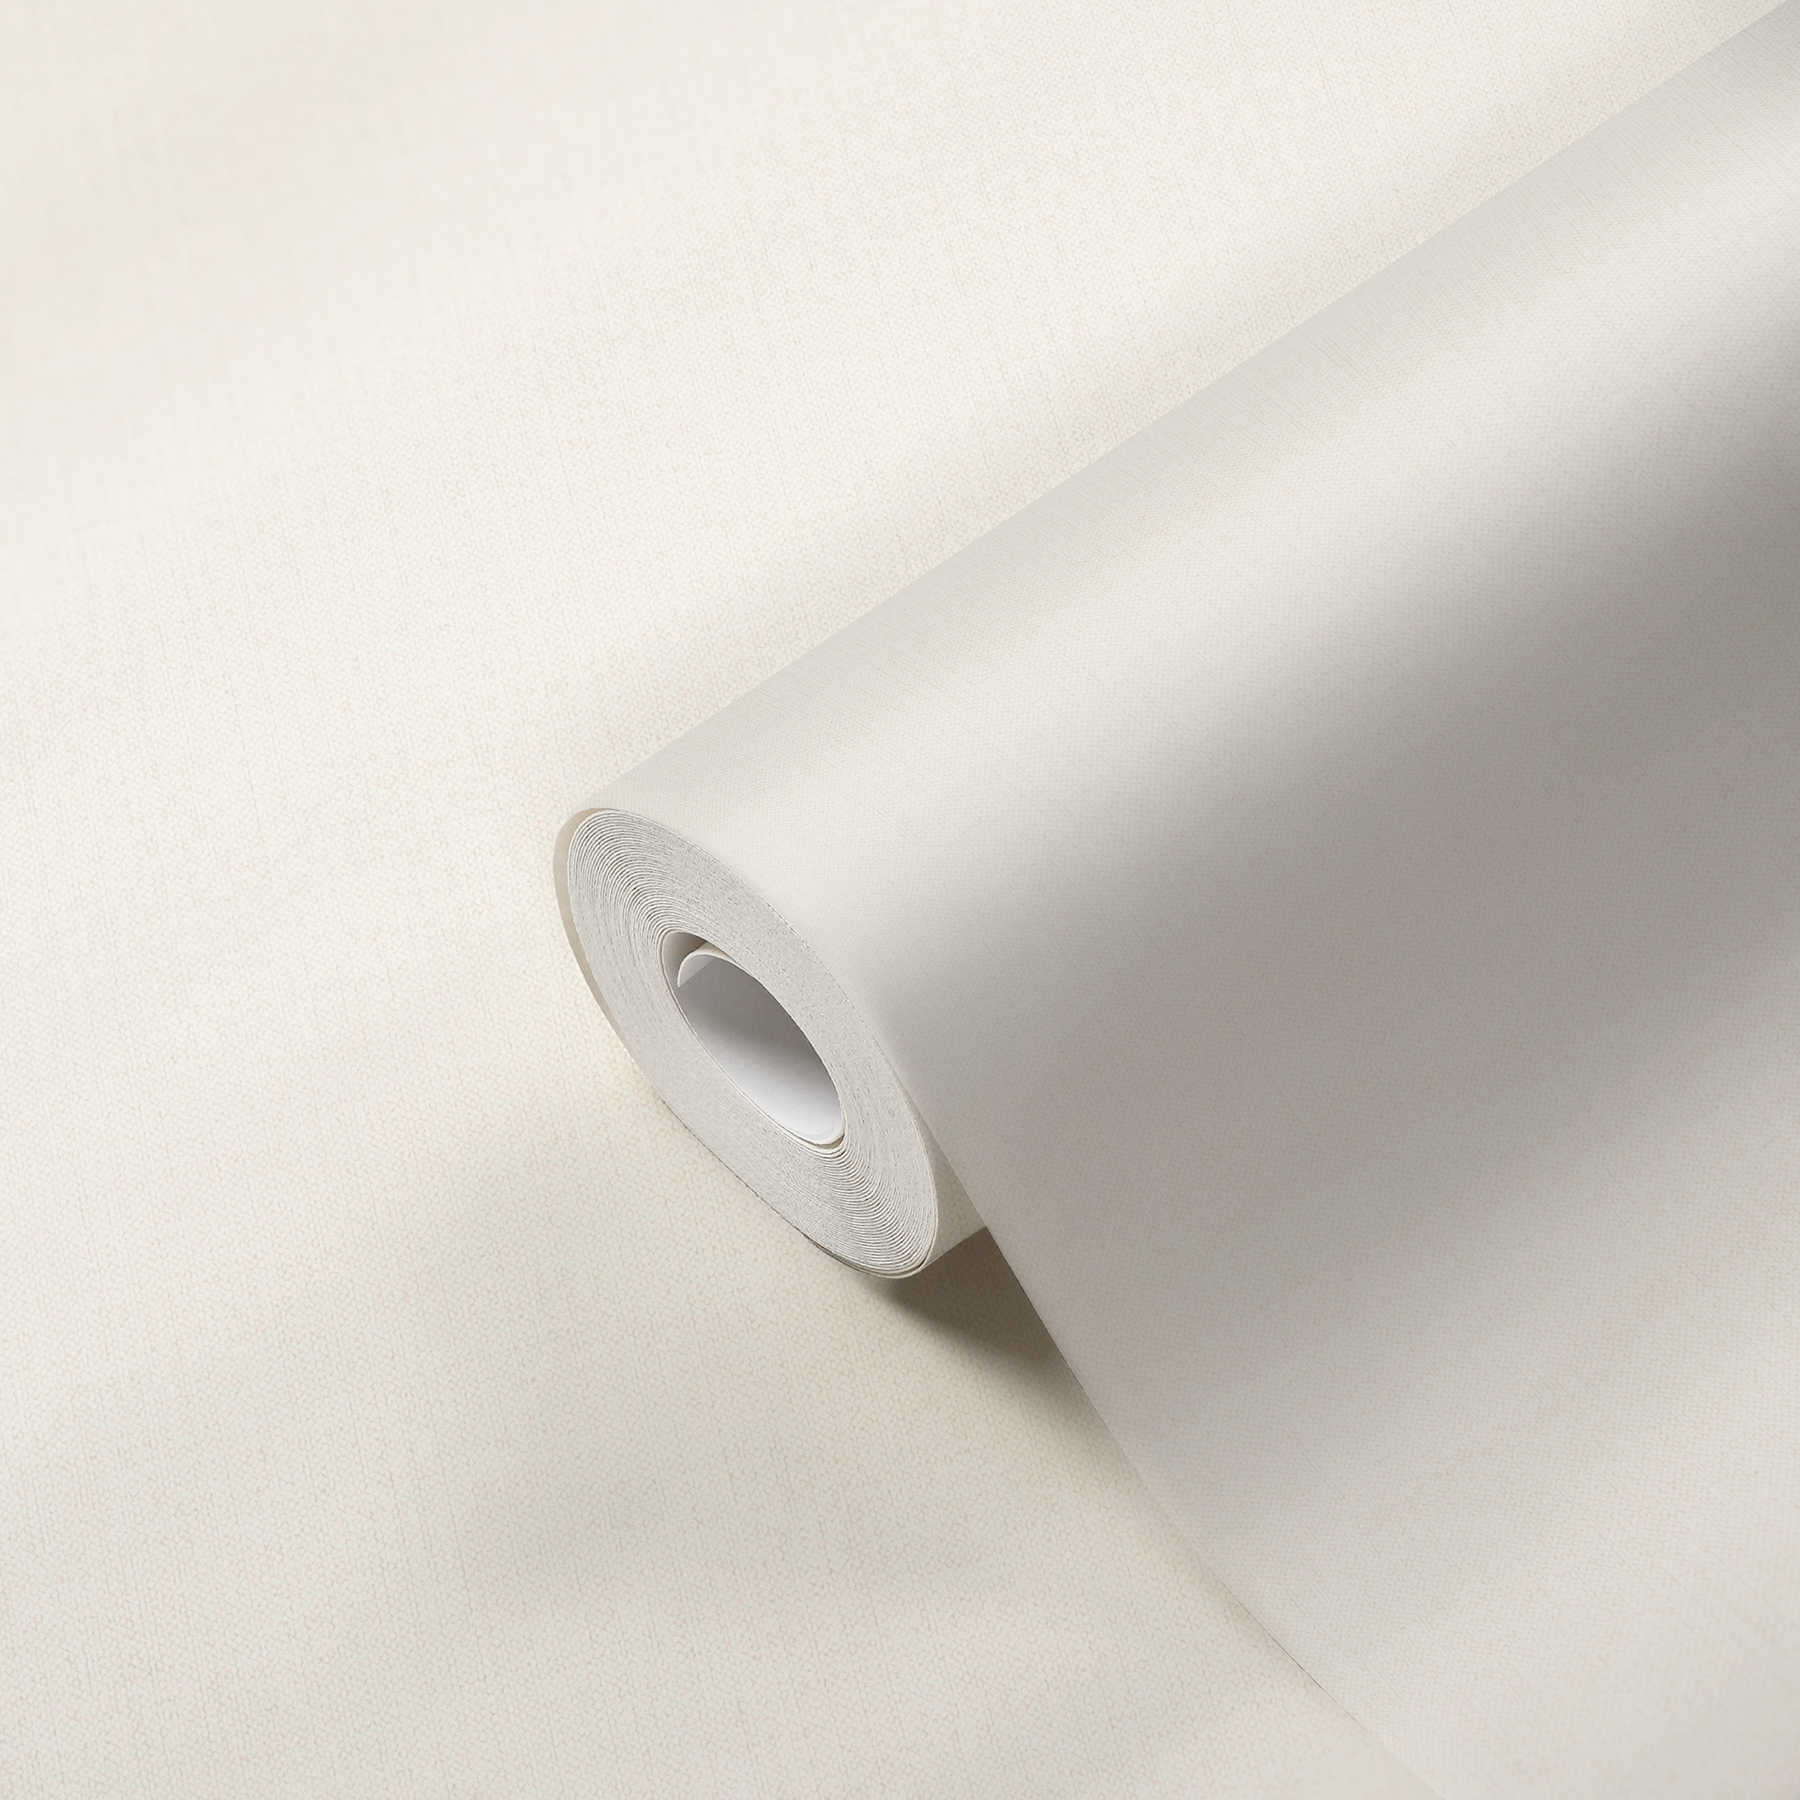             Textiel look vliesbehang wit mat met stofstructuur
        